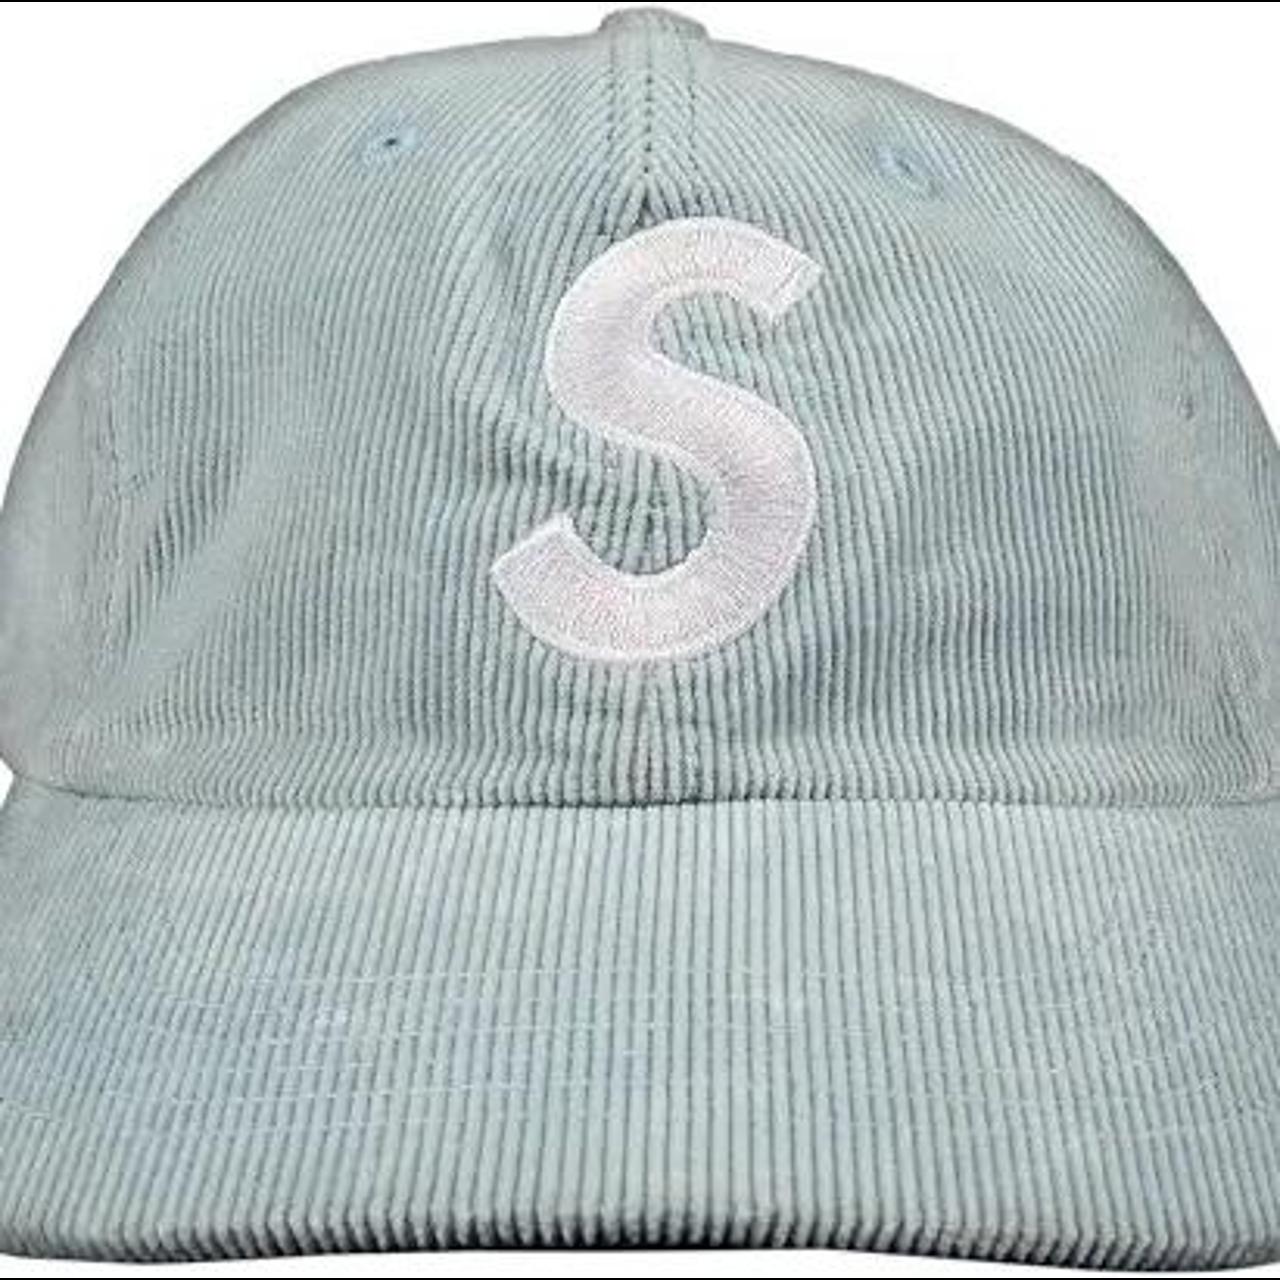 Supreme corduroy 6 panel s logo hat in light blue,... - Depop